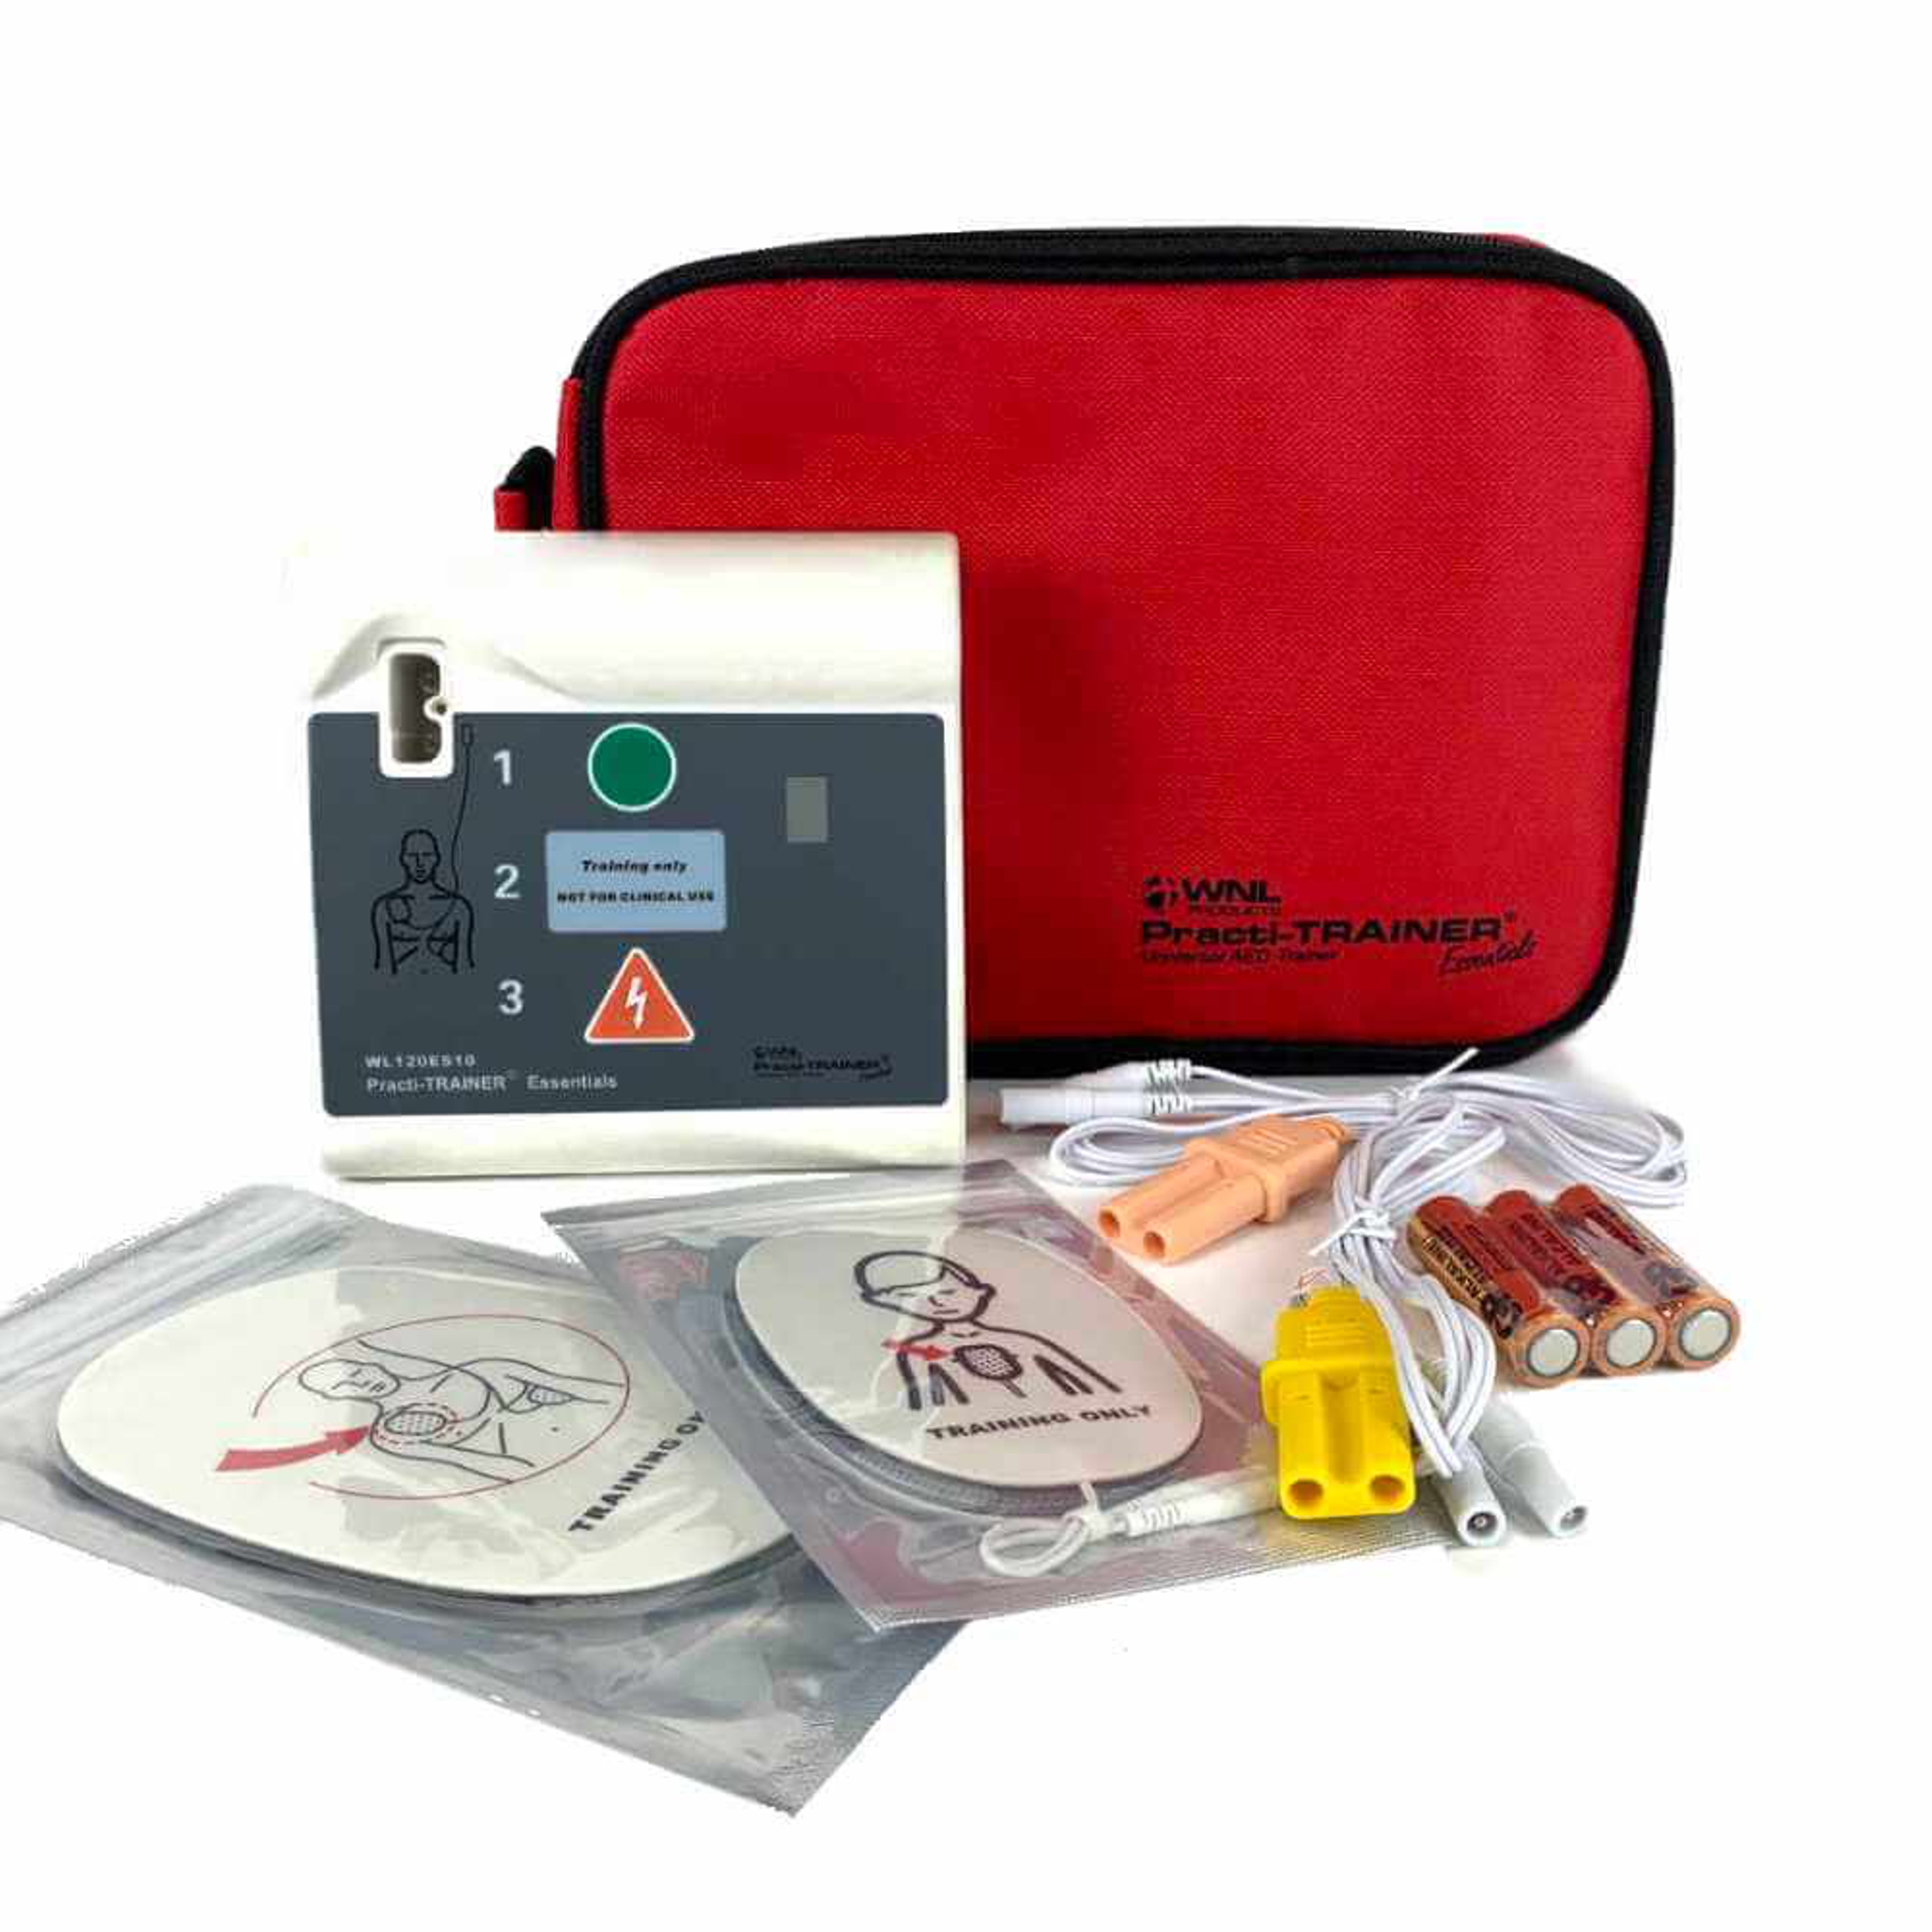 AED Trainer - Practi-Trainer Essentials